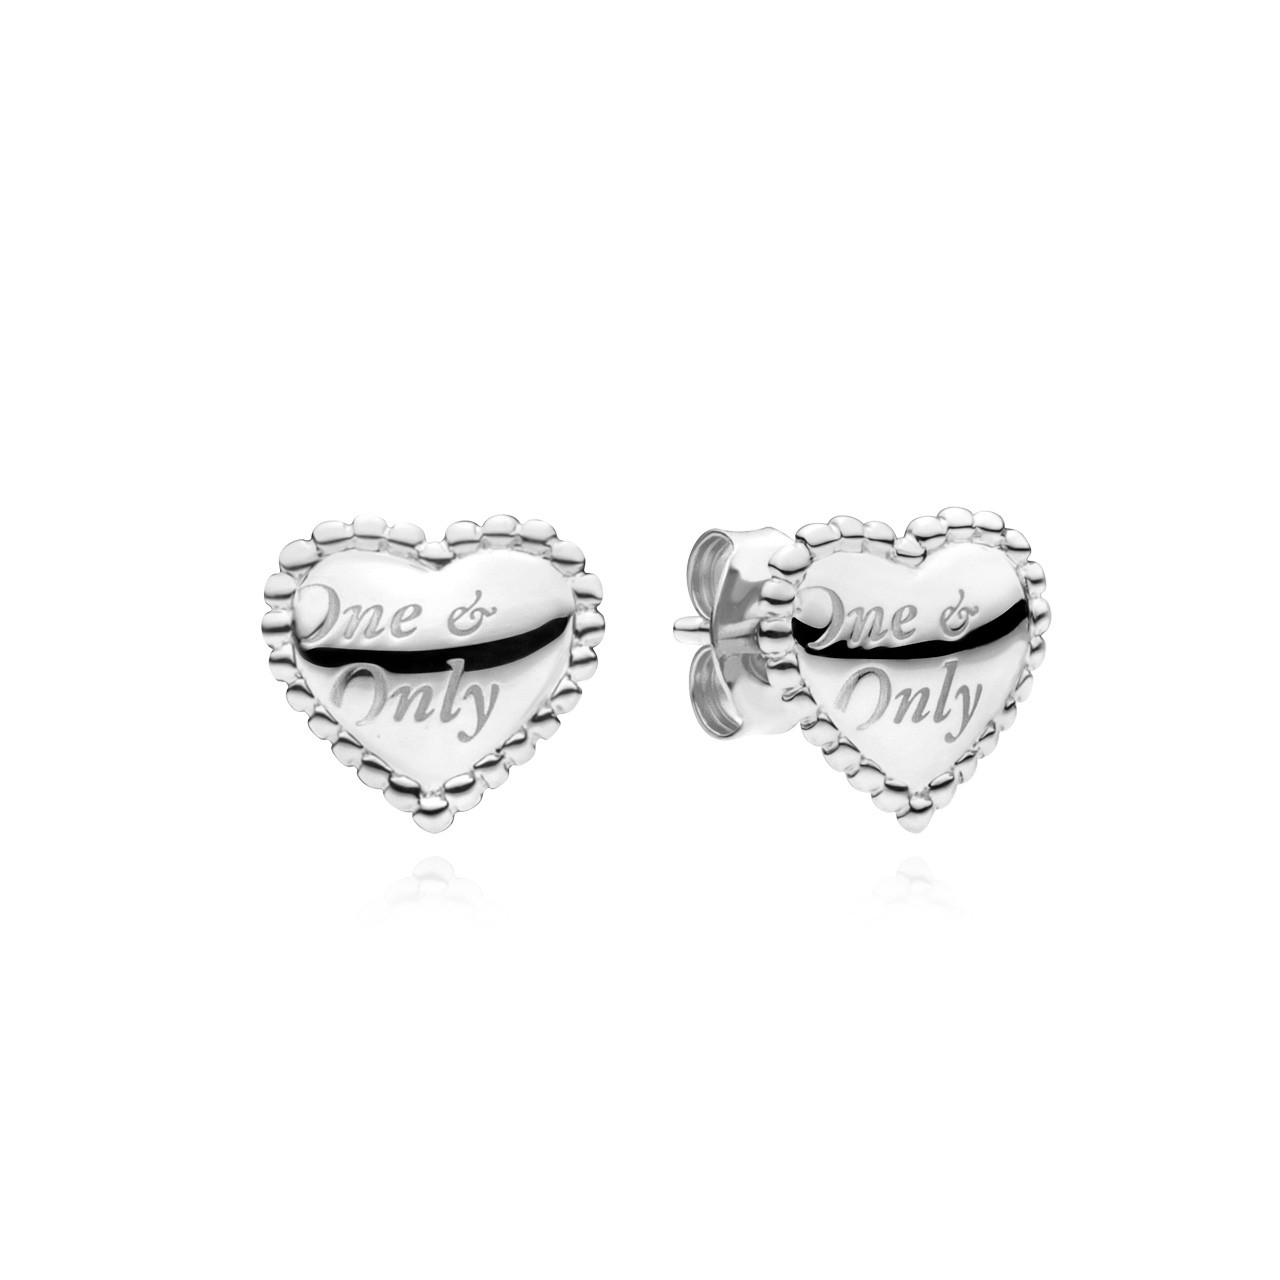 Bidrag galning Gnaven Utzon Jewellery Copenhagen - Smykker - One & Only øreringe i sølv